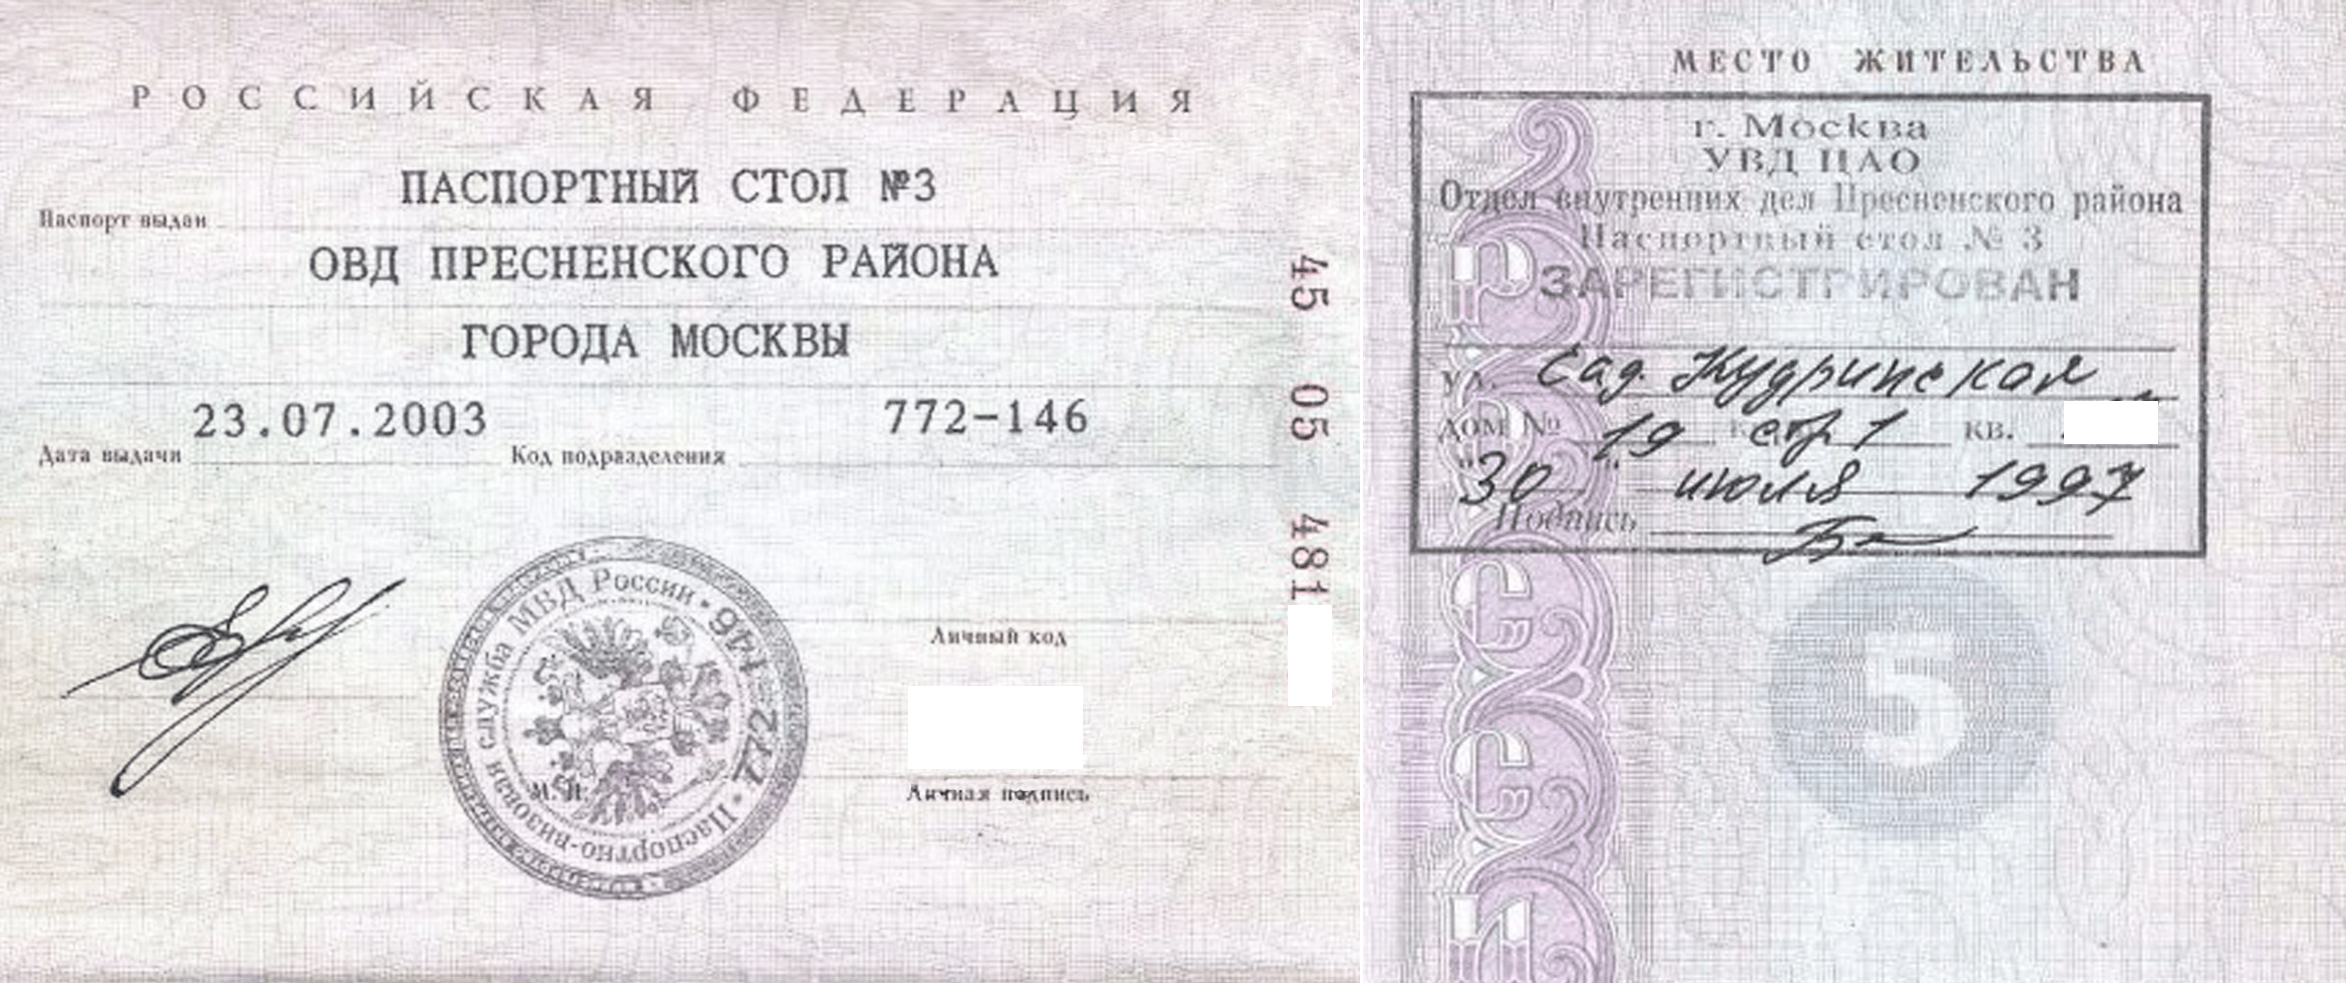 Корпус место жительства. Паспортные данные Москва с пропиской.